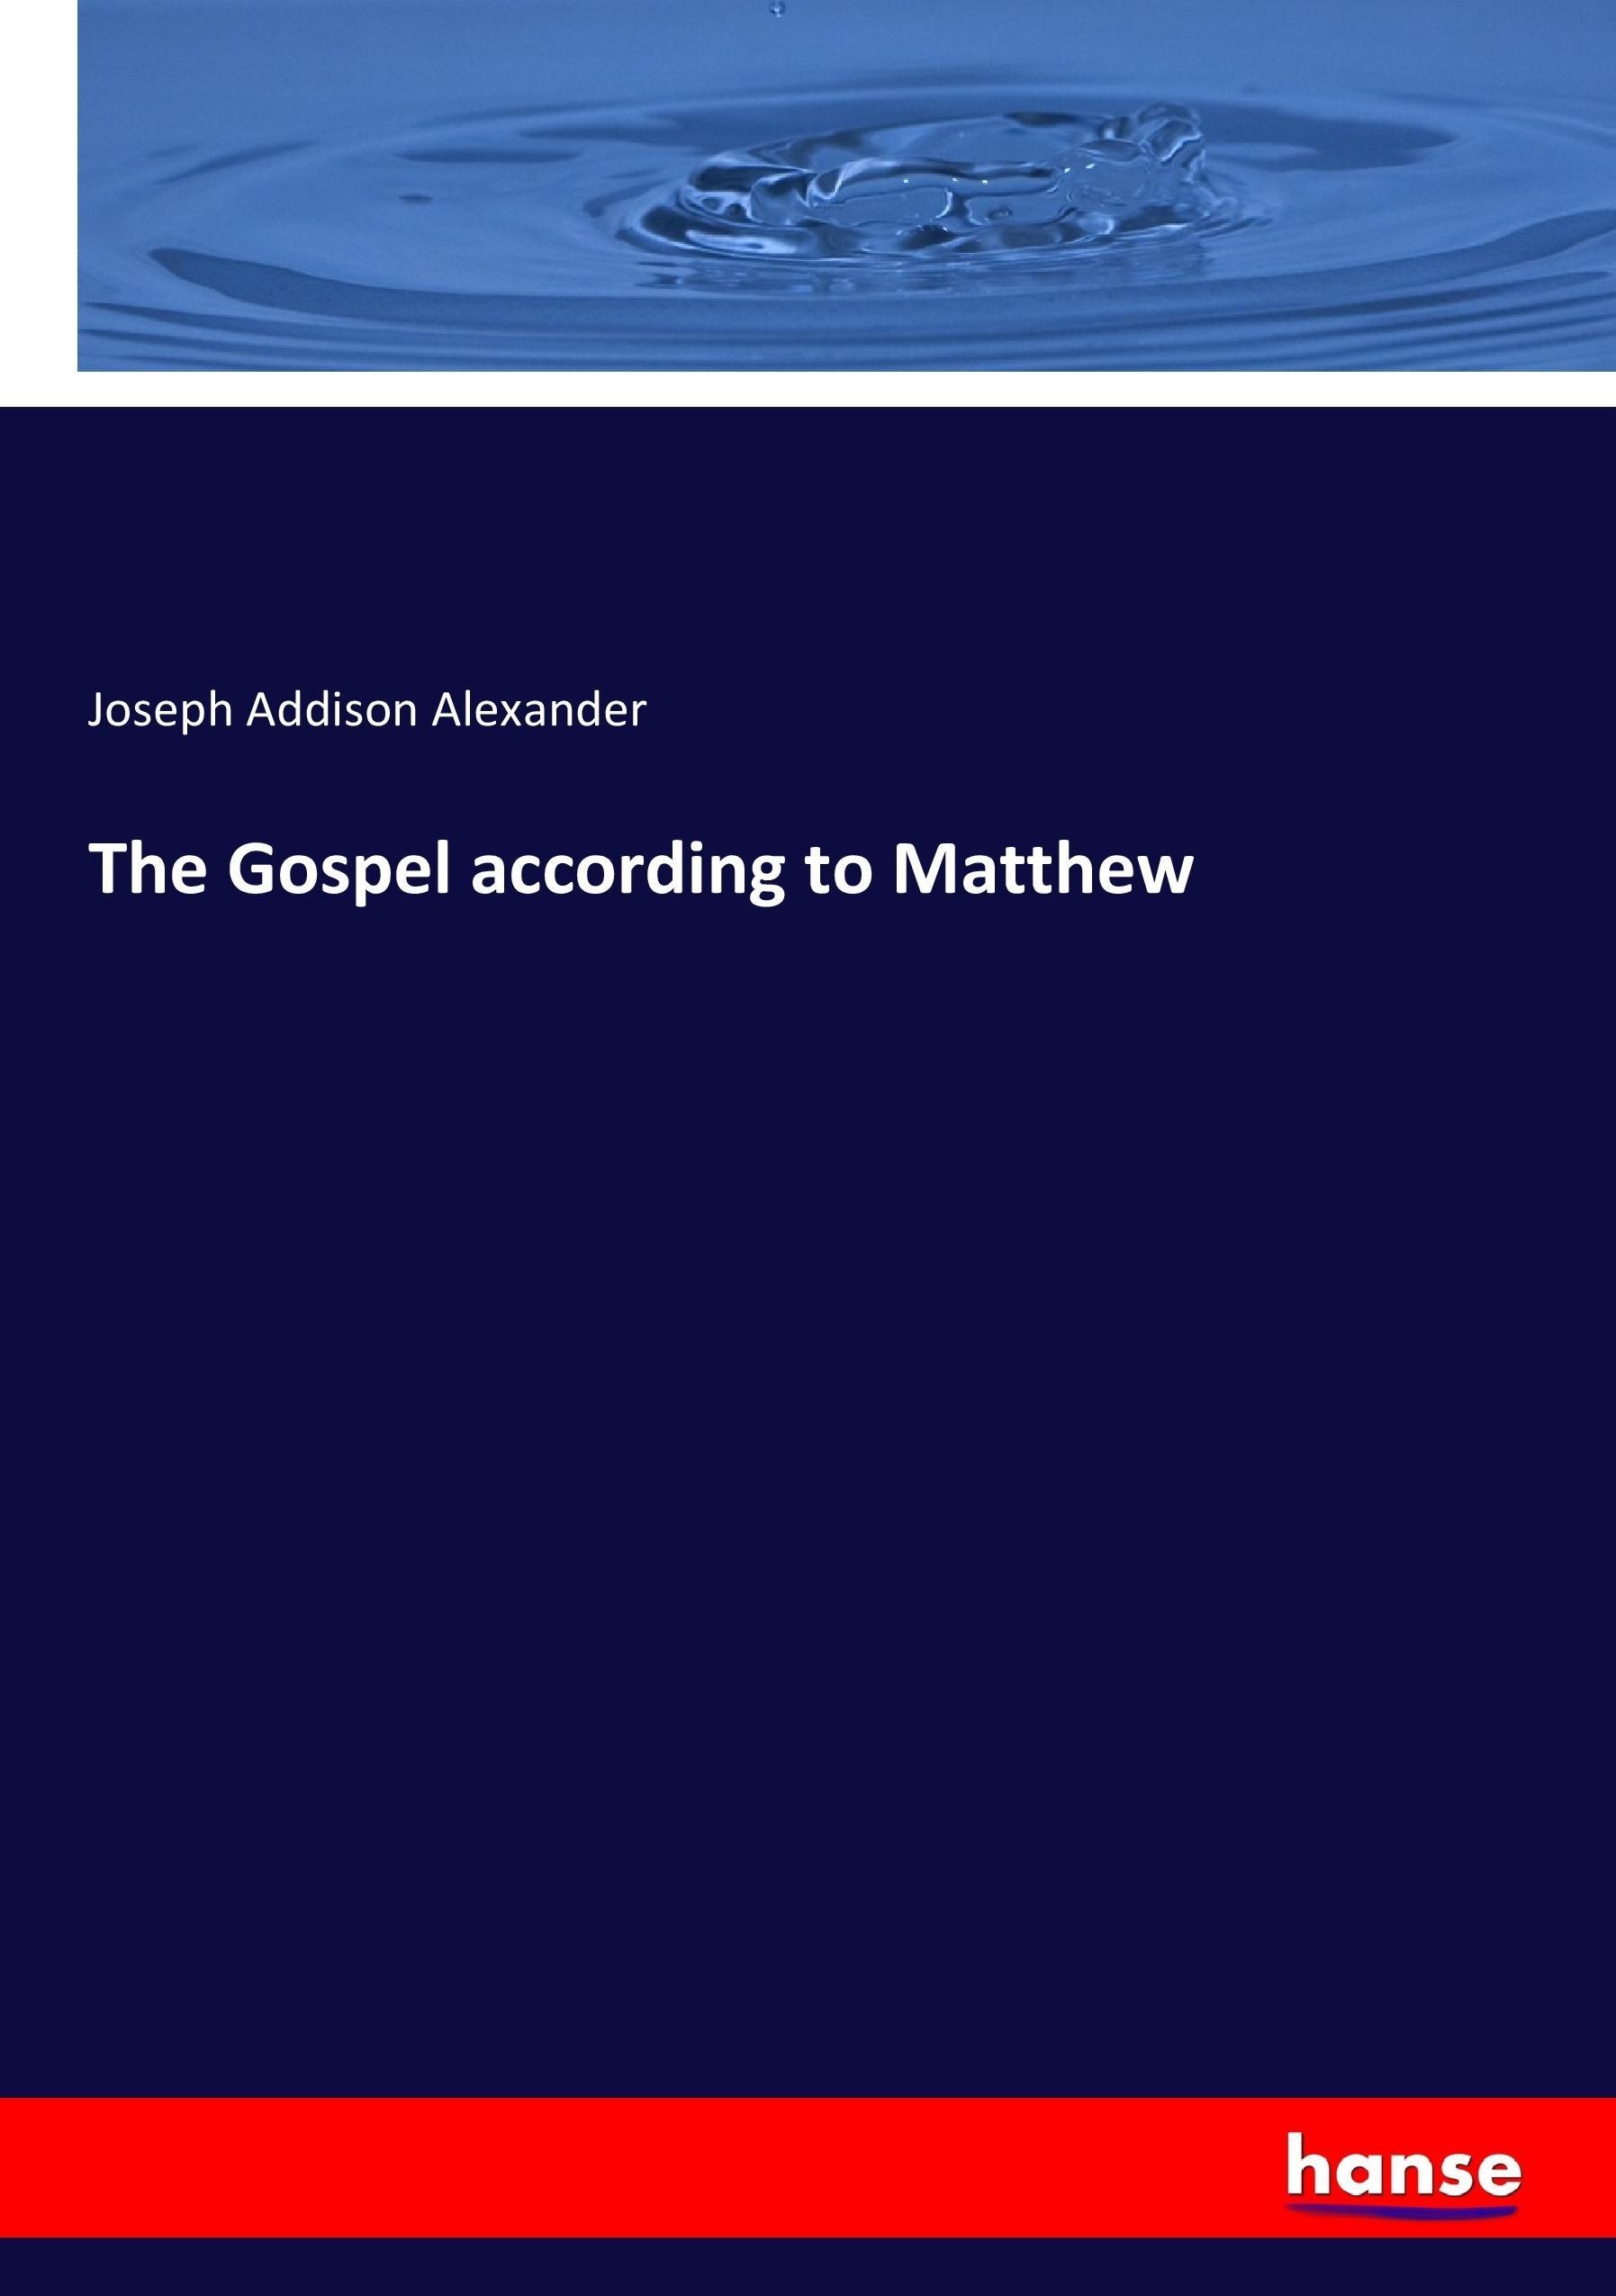 The Gospel according to Matthew / Joseph Addison Alexander / Taschenbuch / Paperback / 464 S. / Englisch / 2017 / hansebooks / EAN 9783337282295 - Alexander, Joseph Addison